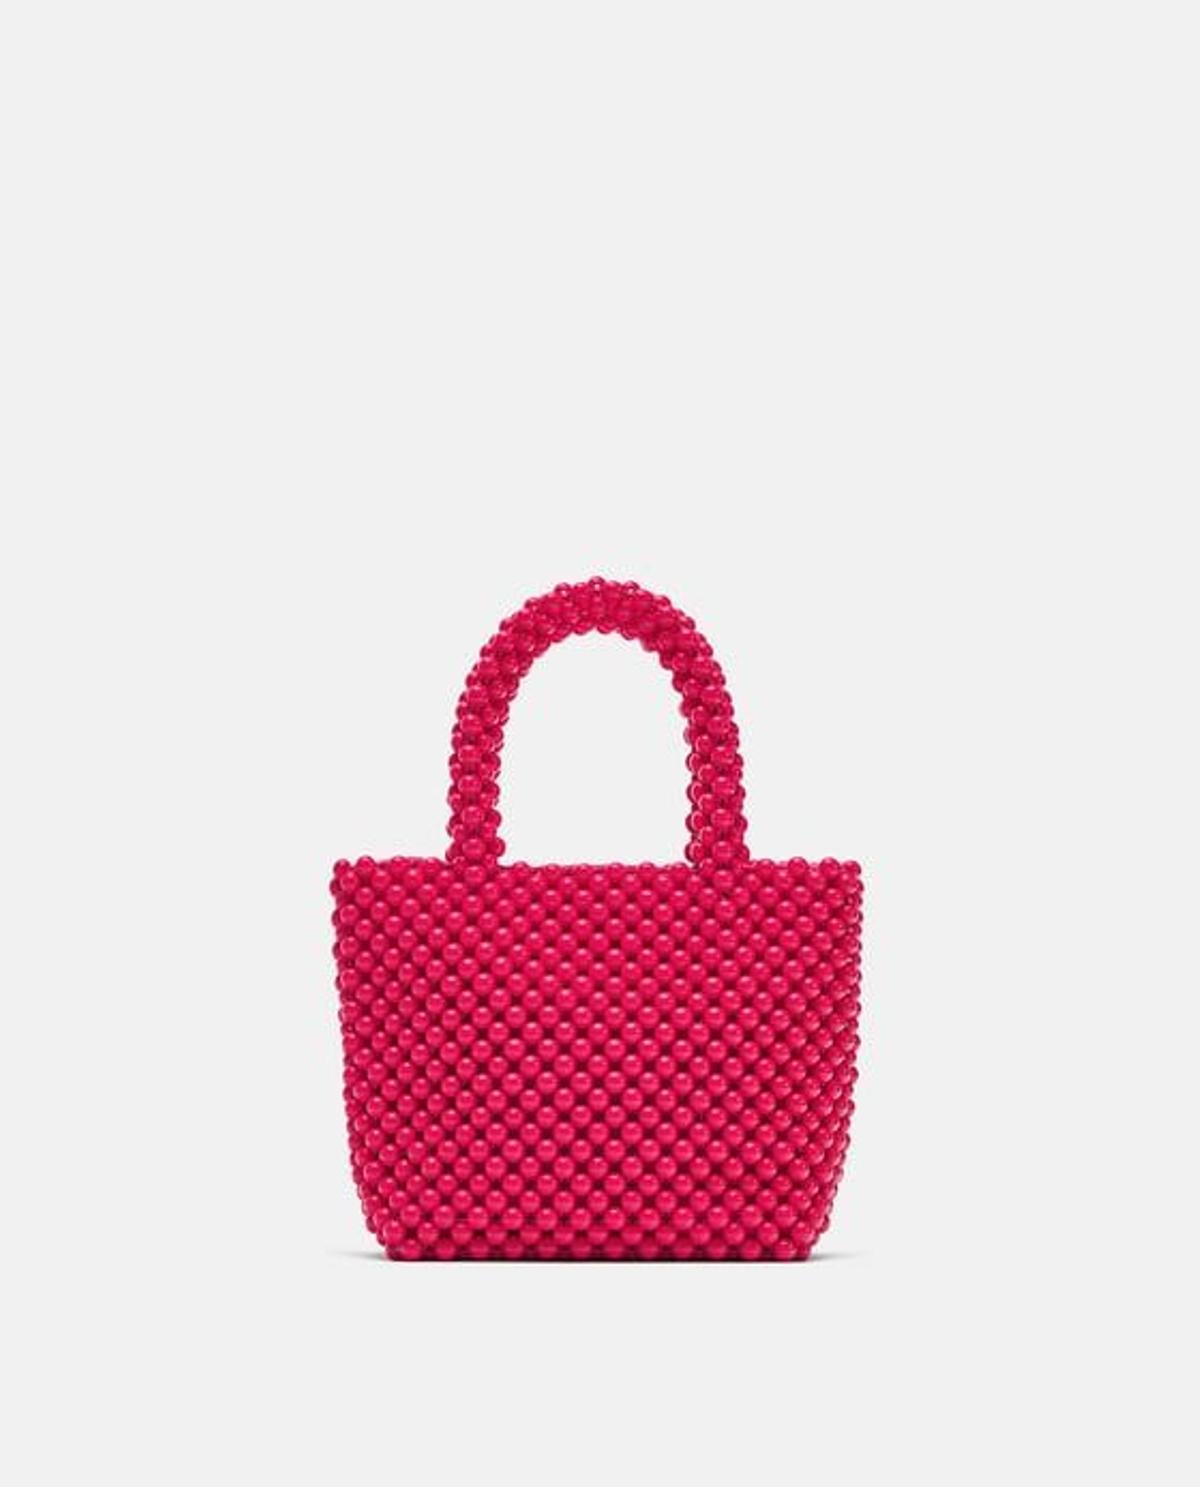 Bolso mini shopper rosa de Zara. (Precio: 29,95 euros)